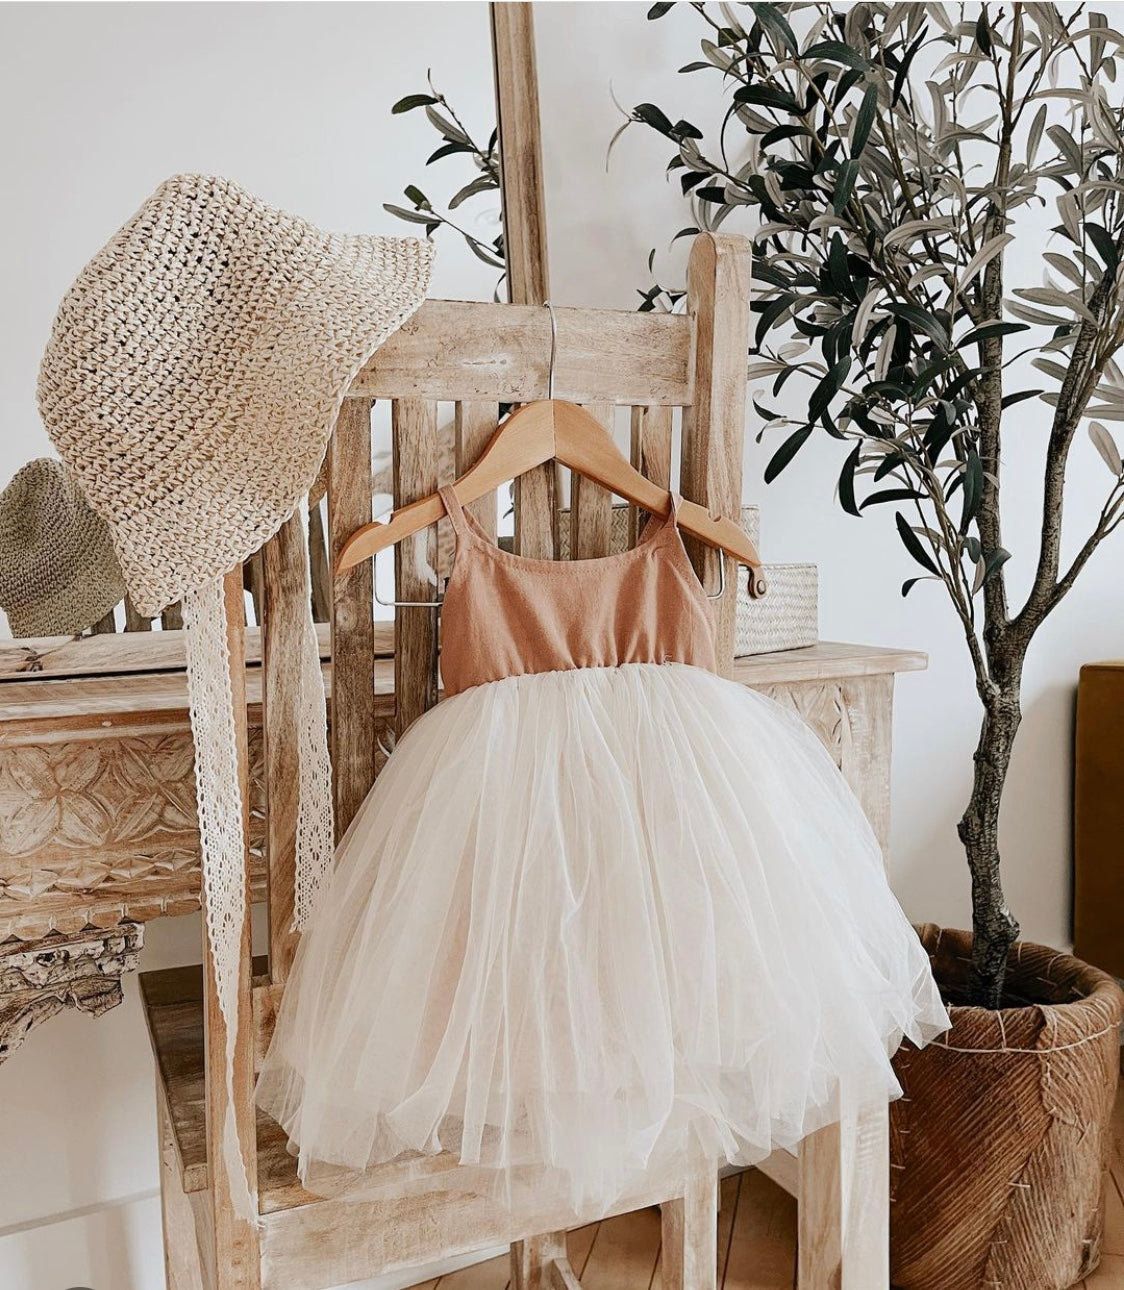 Linen Dress with Tulle TuTu Skirt